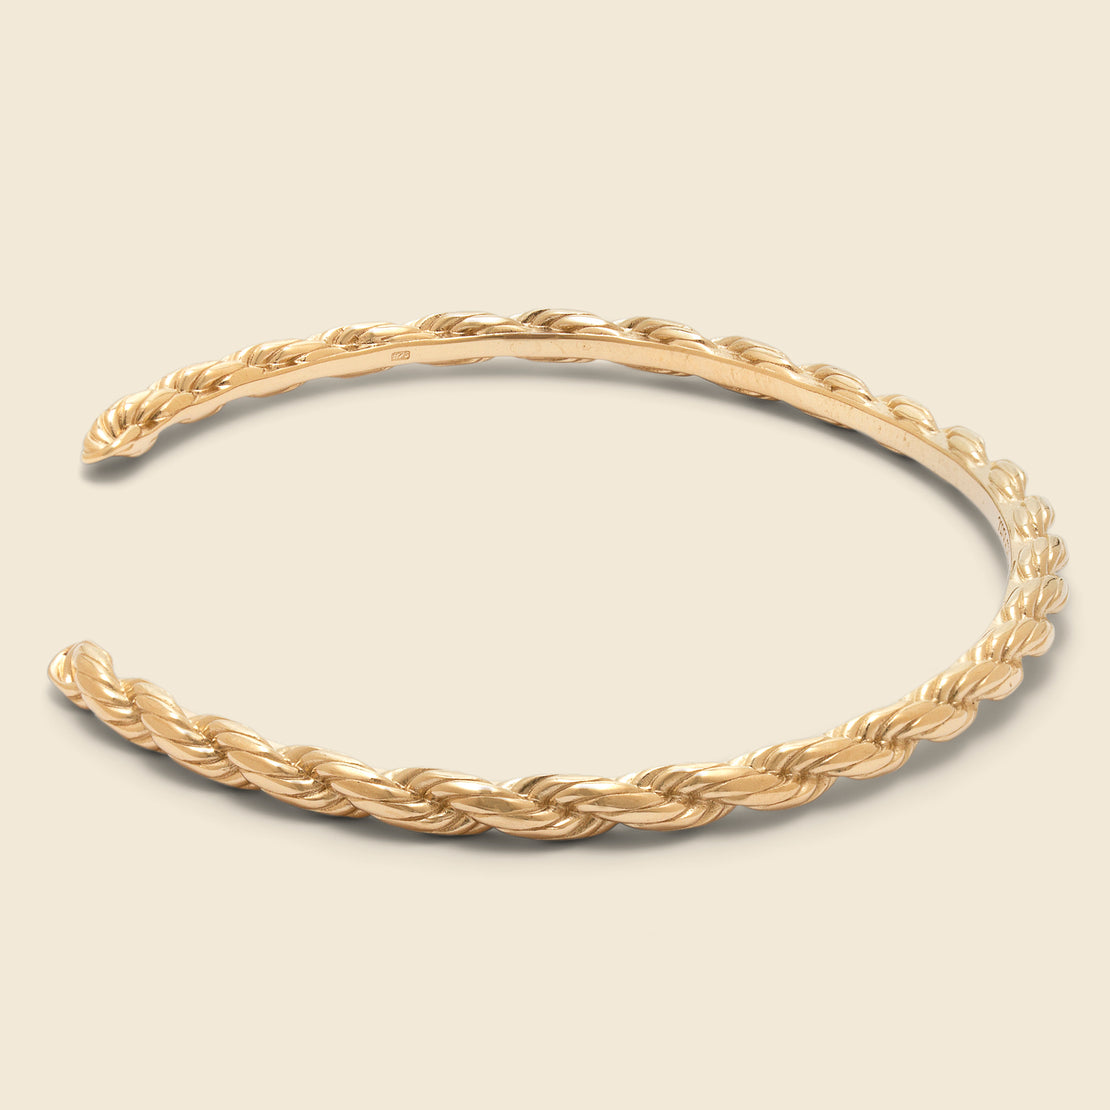 Rope Chain Cuff - Gold Vermeil - Miansai - STAG Provisions - W - Accessories - Bracelet/cuff